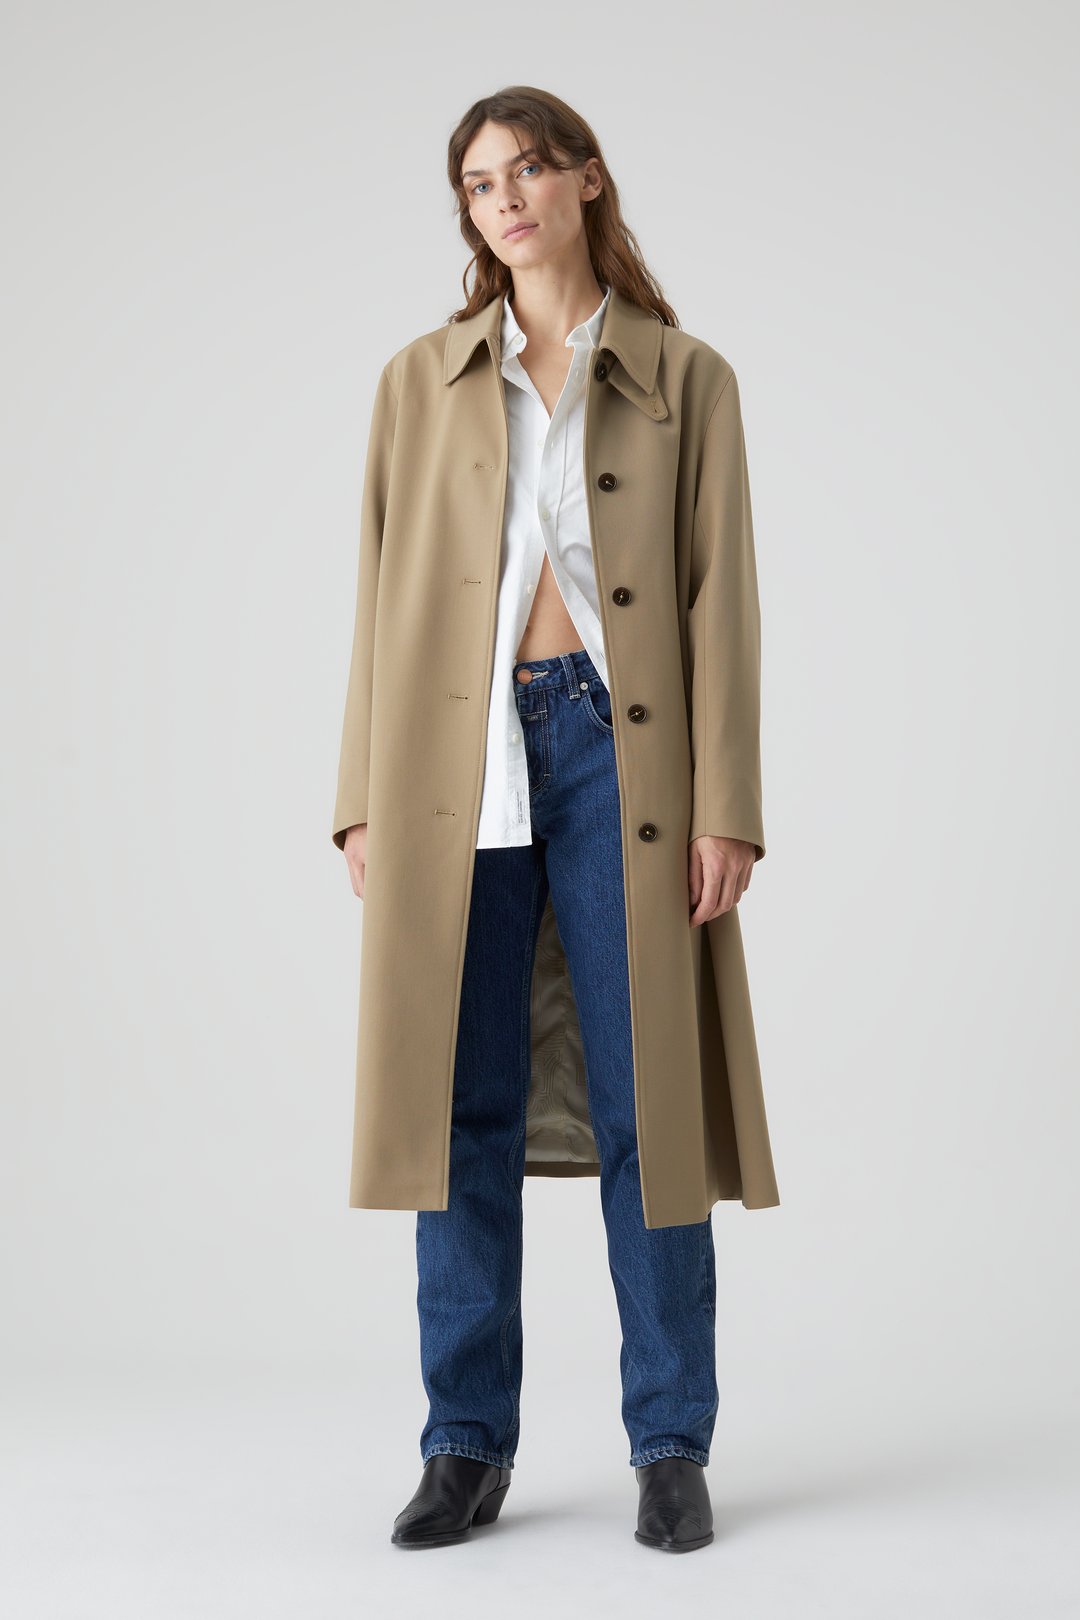 discount 98% Camaïeu Long coat Navy Blue S WOMEN FASHION Coats Cloth 